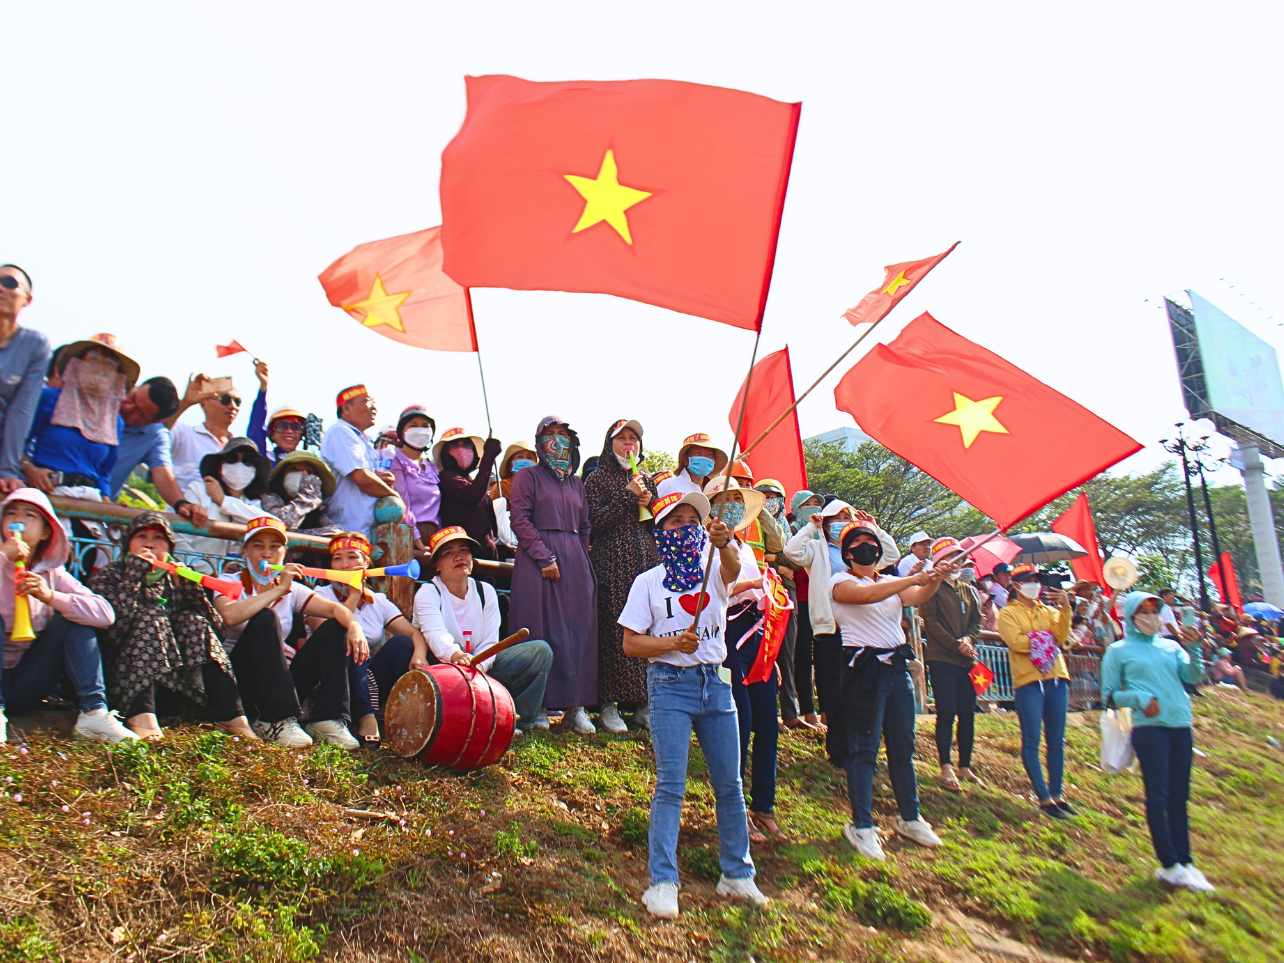 Giải năm nay nhận được đông đảo sự quan tâm, cổ vũ của các du khách trong và ngoài tỉnh Kon Tum. Ảnh: Lê Nguyên 